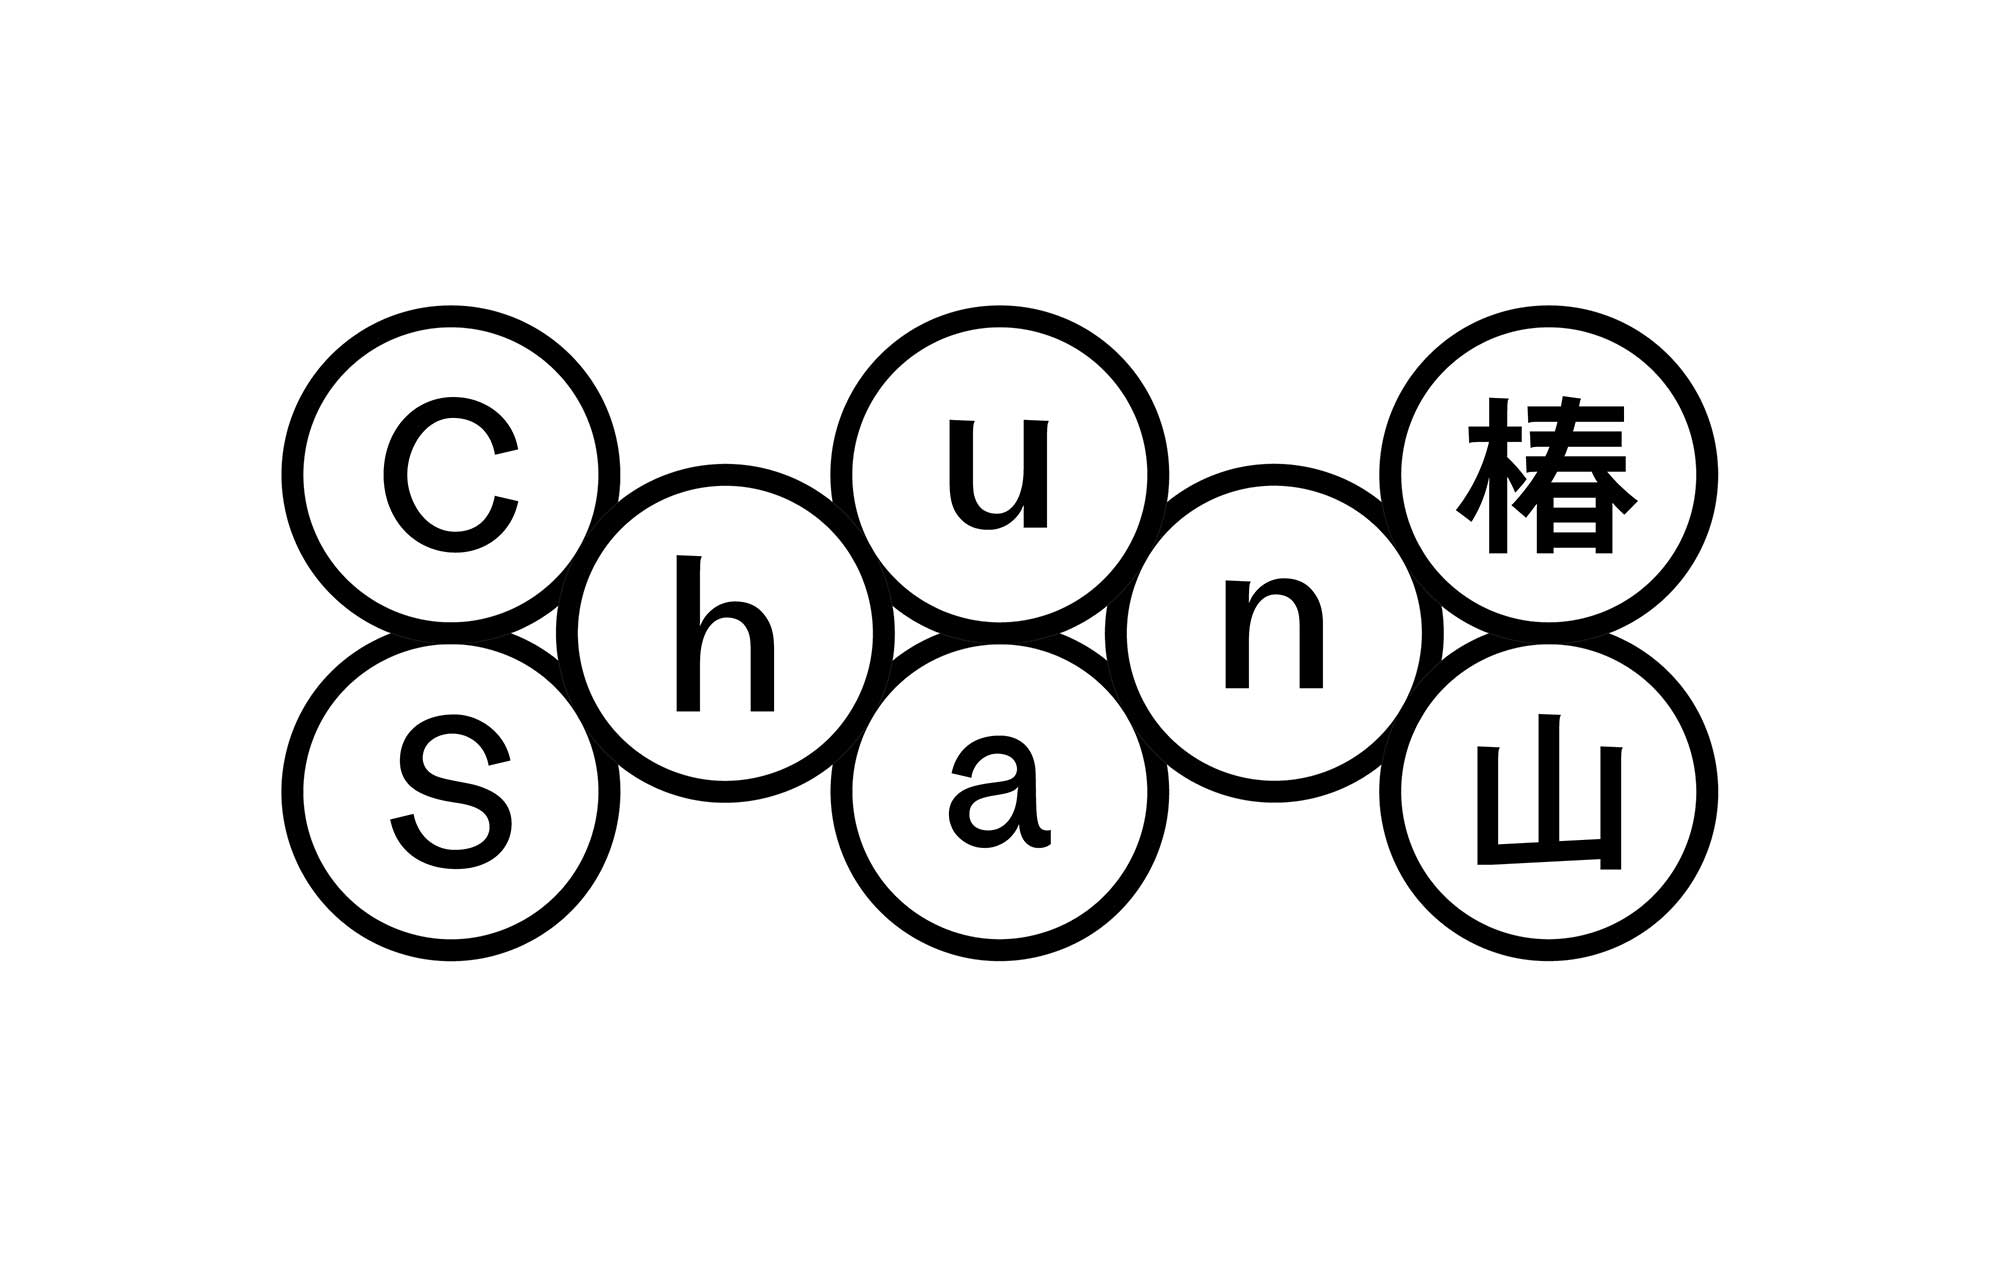 香氛品牌 ChunShan 椿山